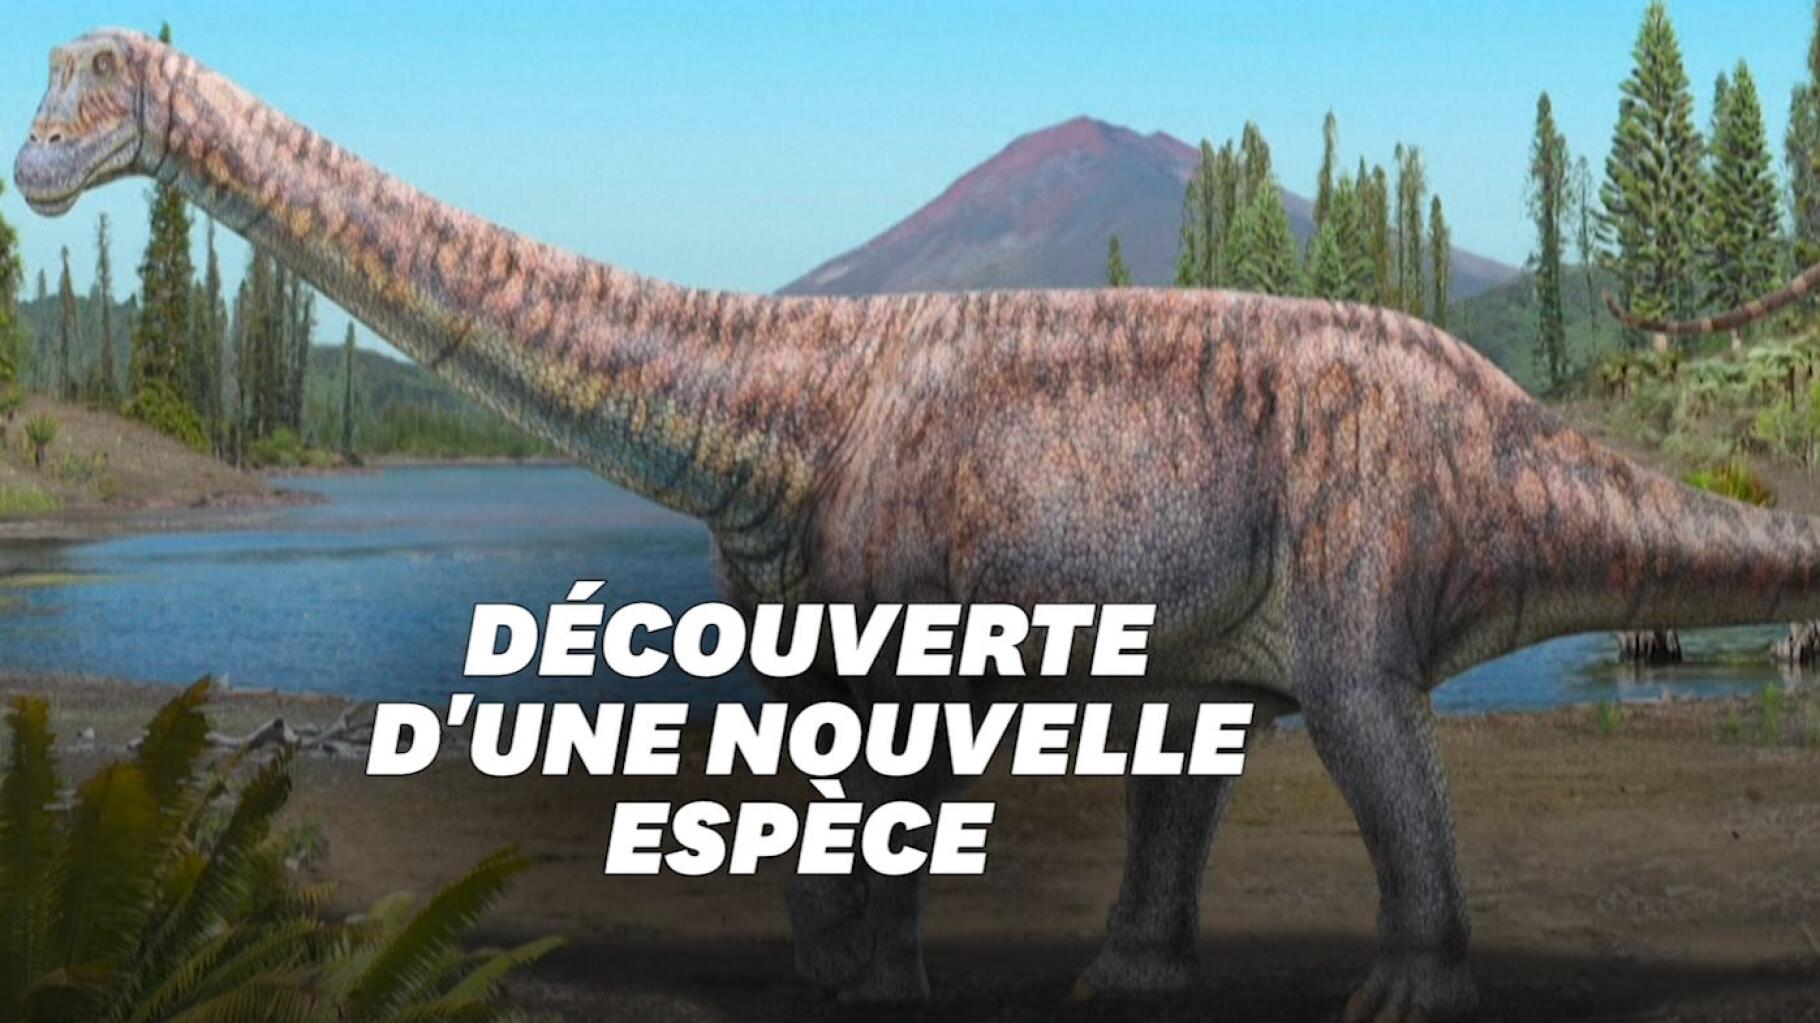 Una nueva especie de dinosaurio ha sido descubierta en Chile